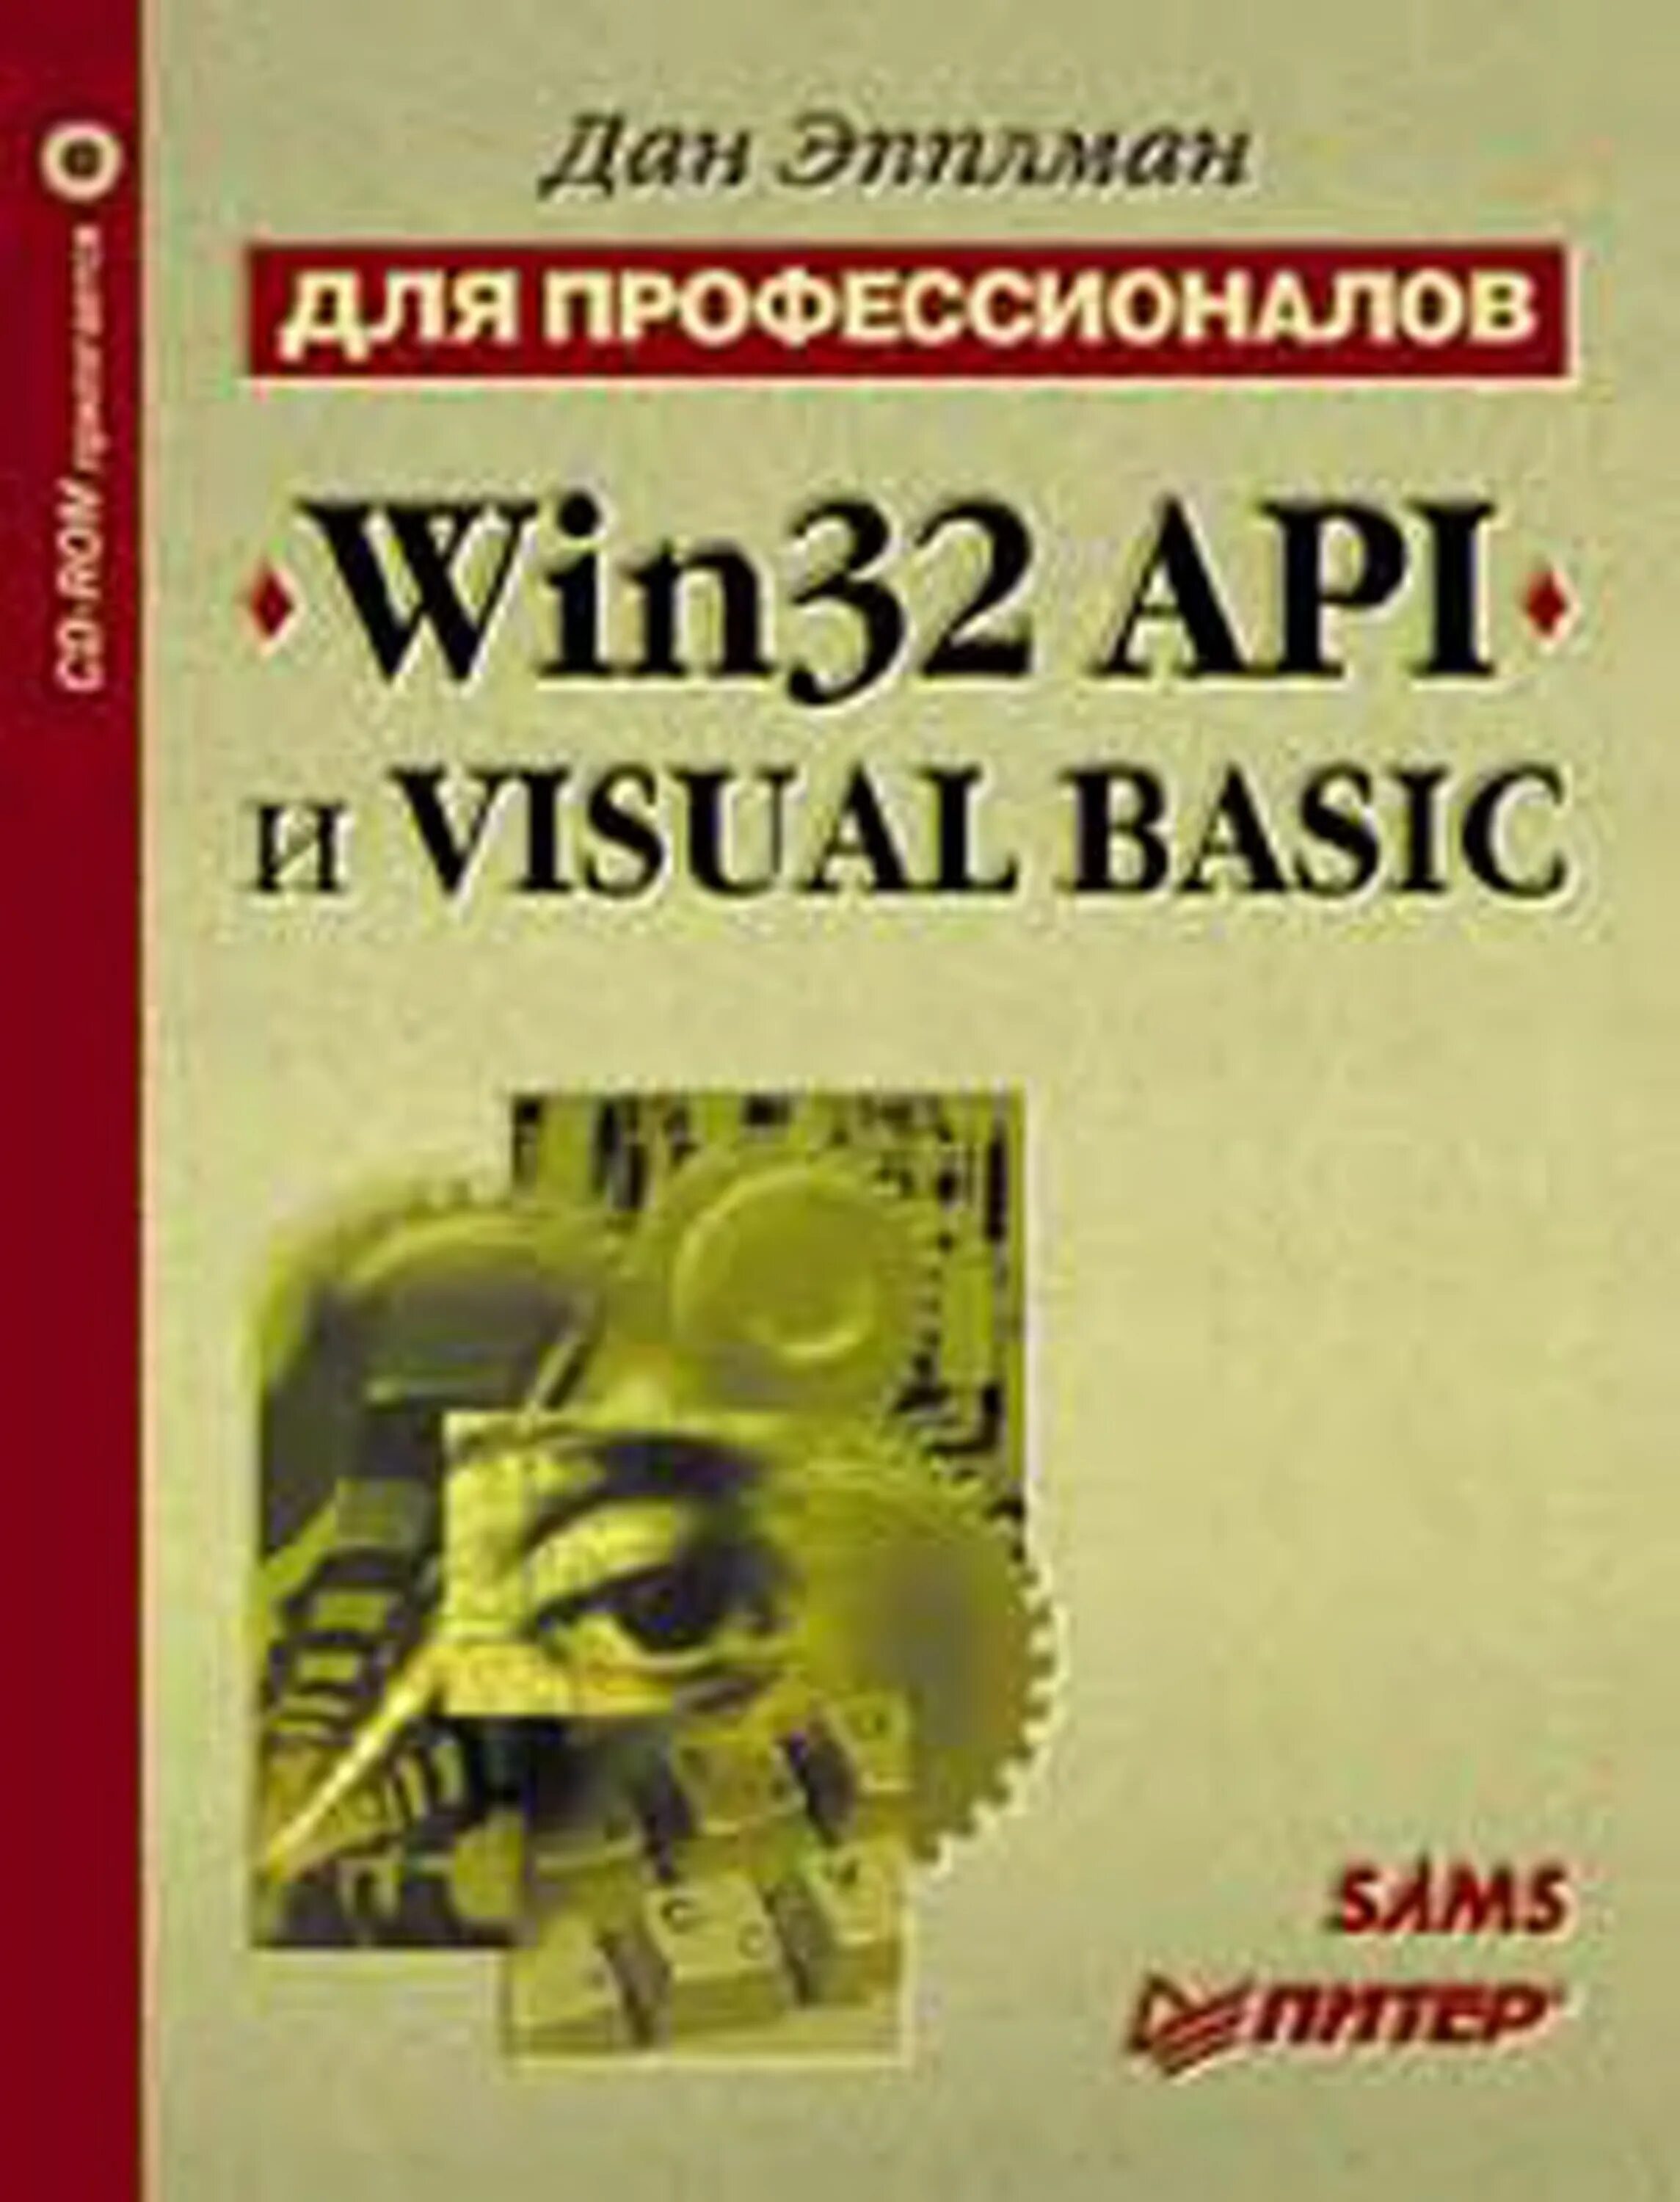 Книга Basic. Winapi книги. Win32 API книга. Книги шын.